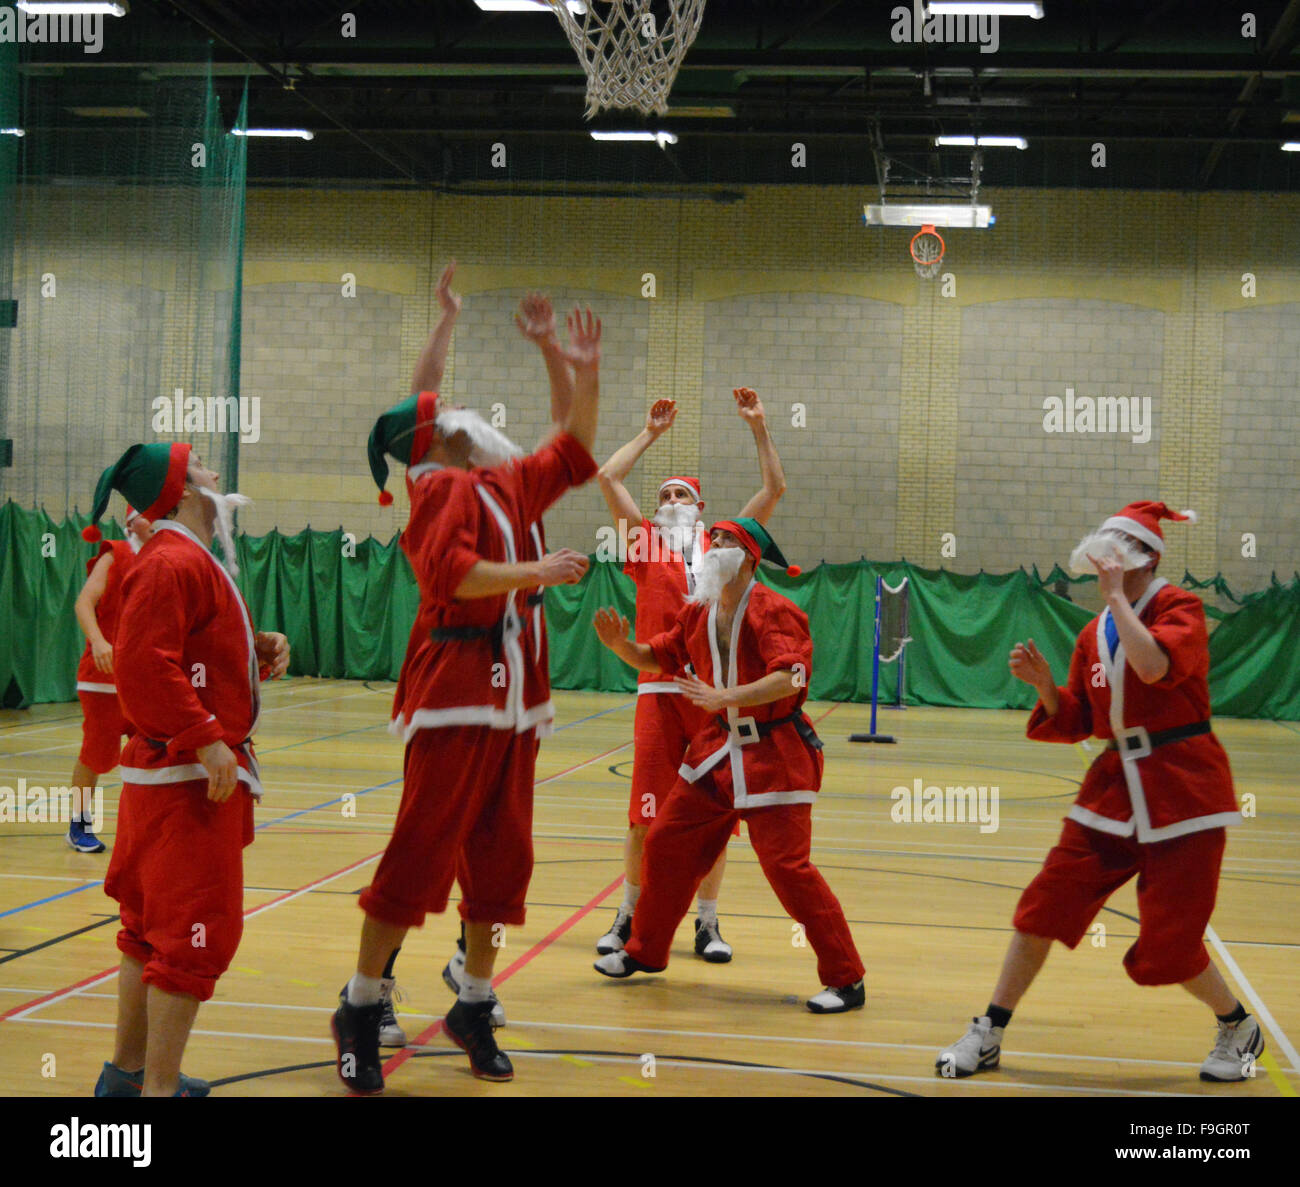 Lectura, Berks, Reino Unido. El 16 de diciembre de 2015. 10 Santas jugando un partido de baloncesto 5 contra 5. ¿Qué es normalmente una sesión de baloncesto privado se convirtió en una Santa-fest en Valle Loddon centro de ocio, lectura. Vivienne Johnson/Wokingham Papel/ Alamy Live News Foto de stock